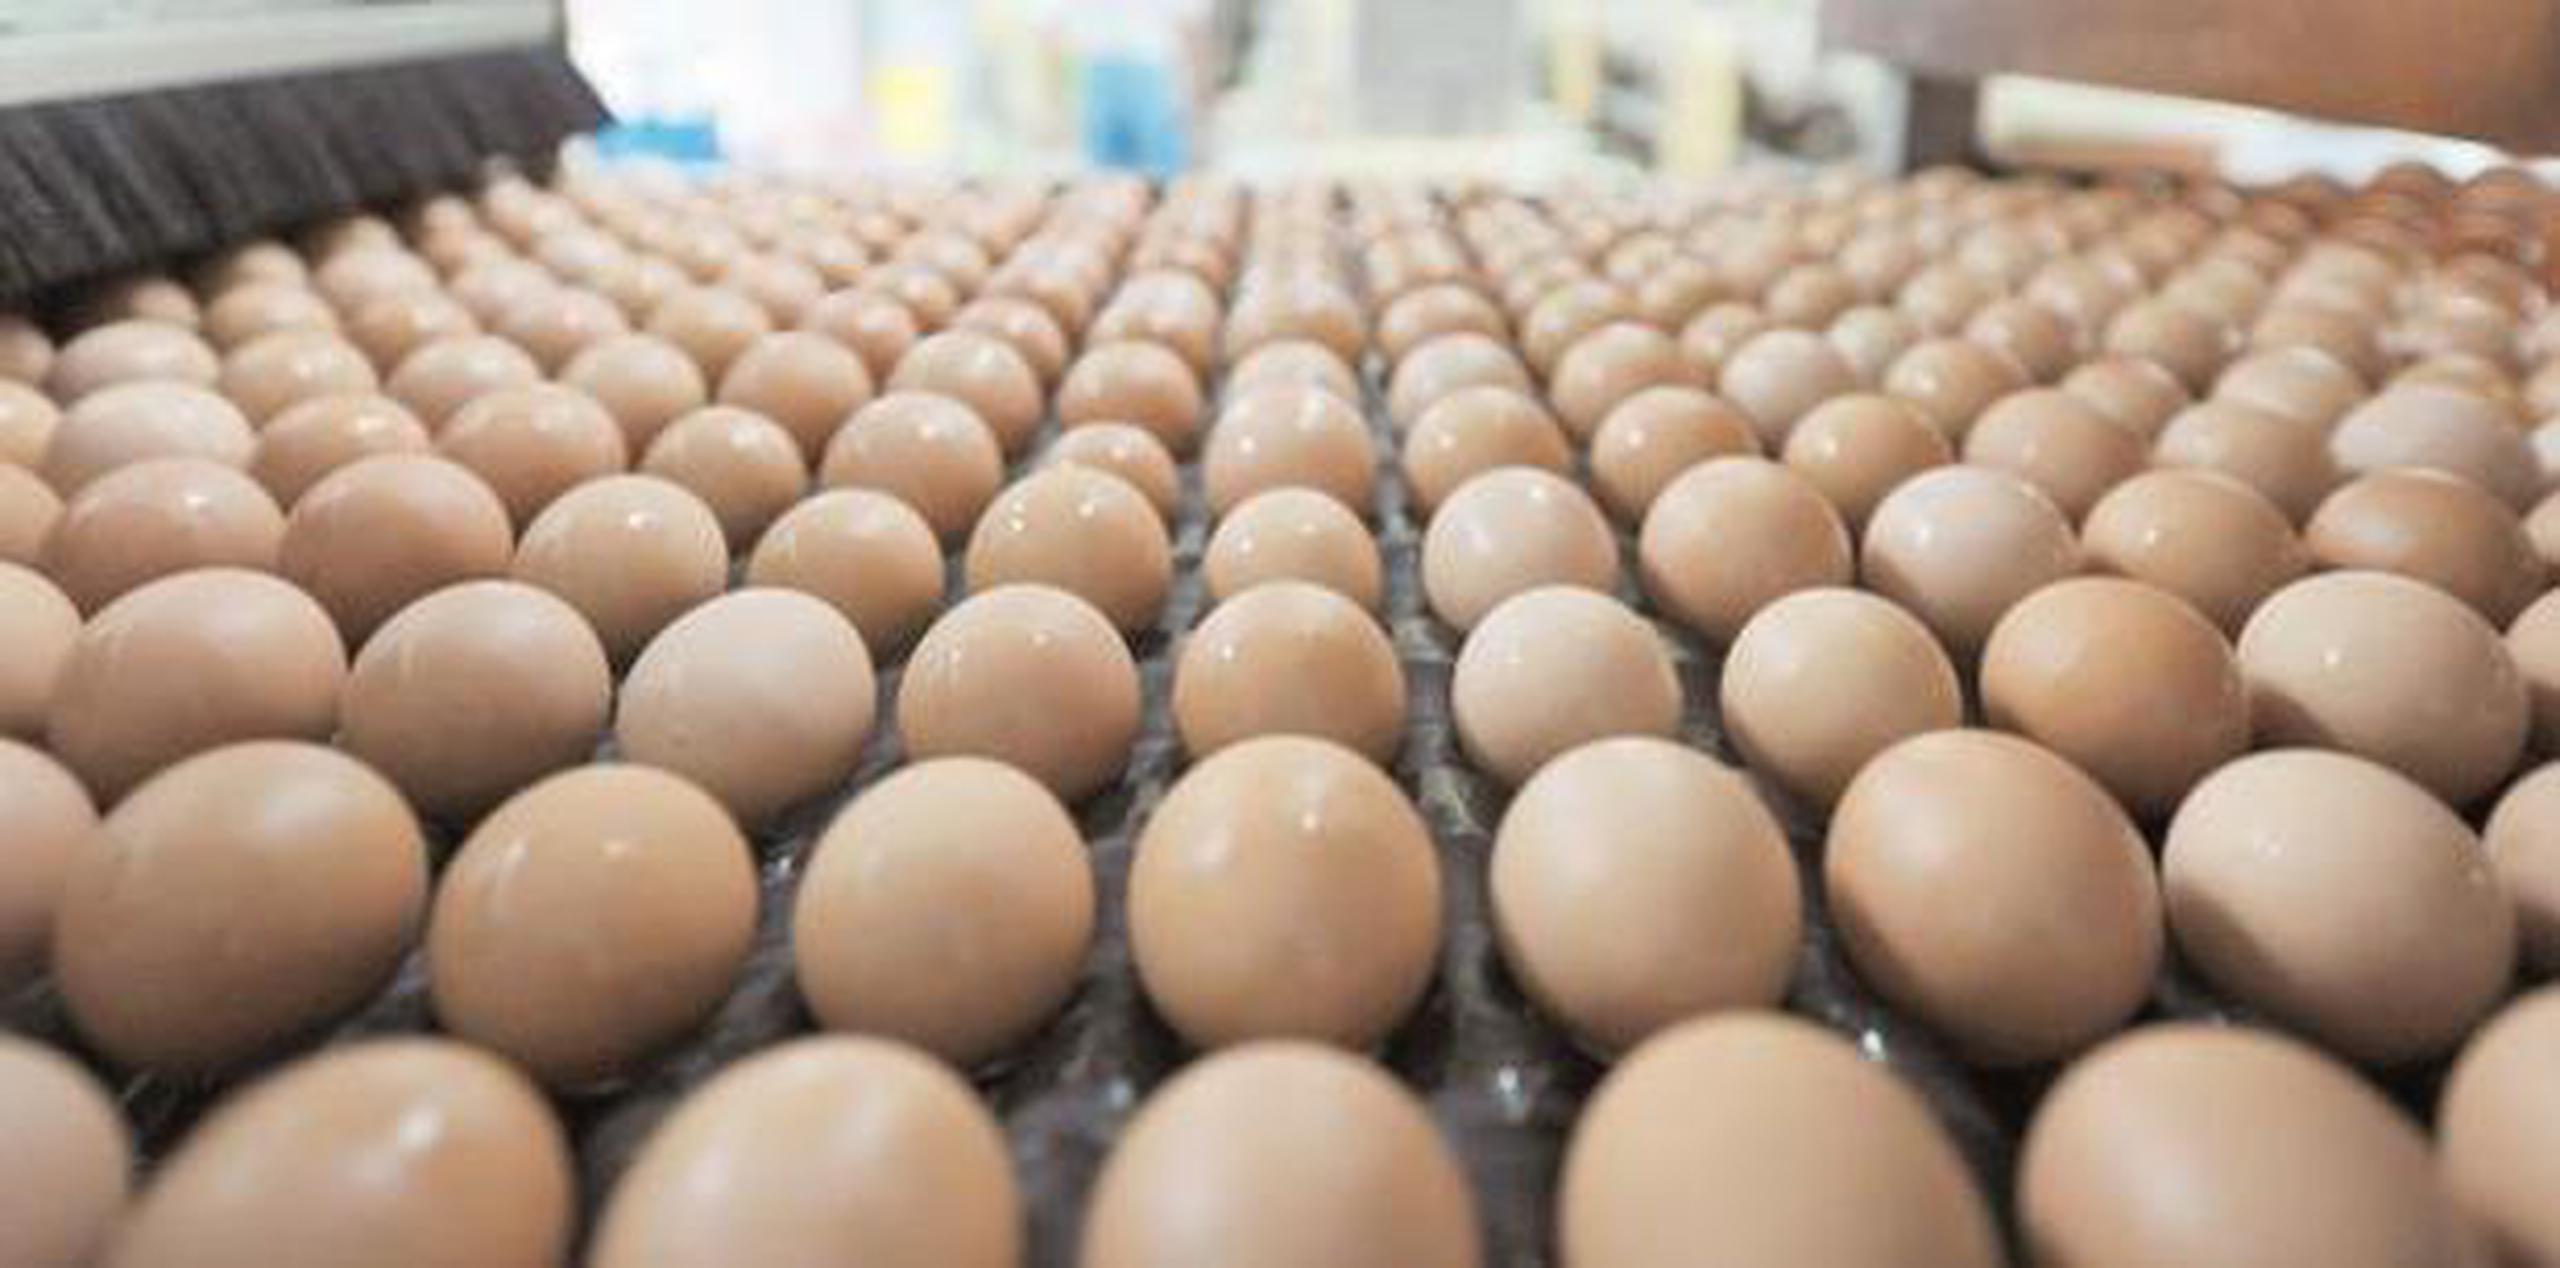 Dicen que no hay peligro para los consumidores y que los huevos están siendo retirados como medida de precaución.  (Archivo)